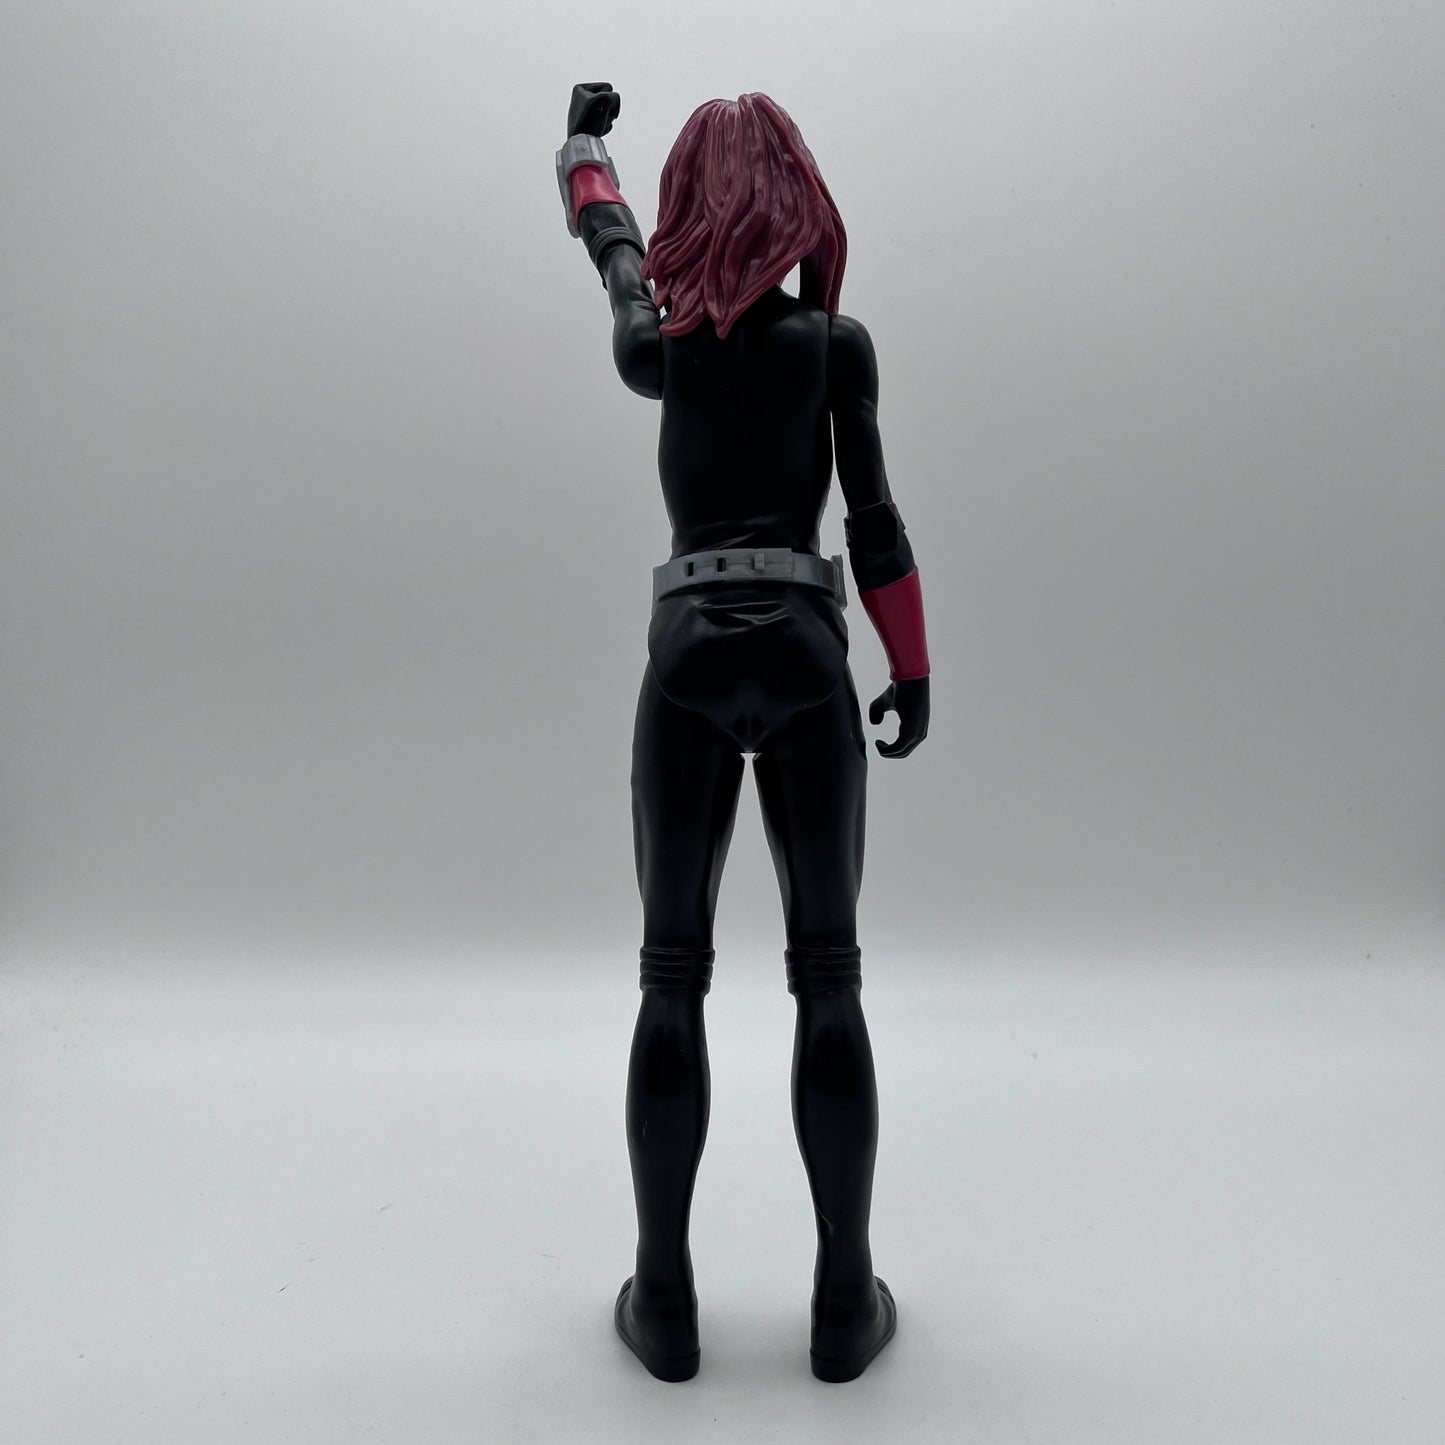 2015 Black Widow Action Figure